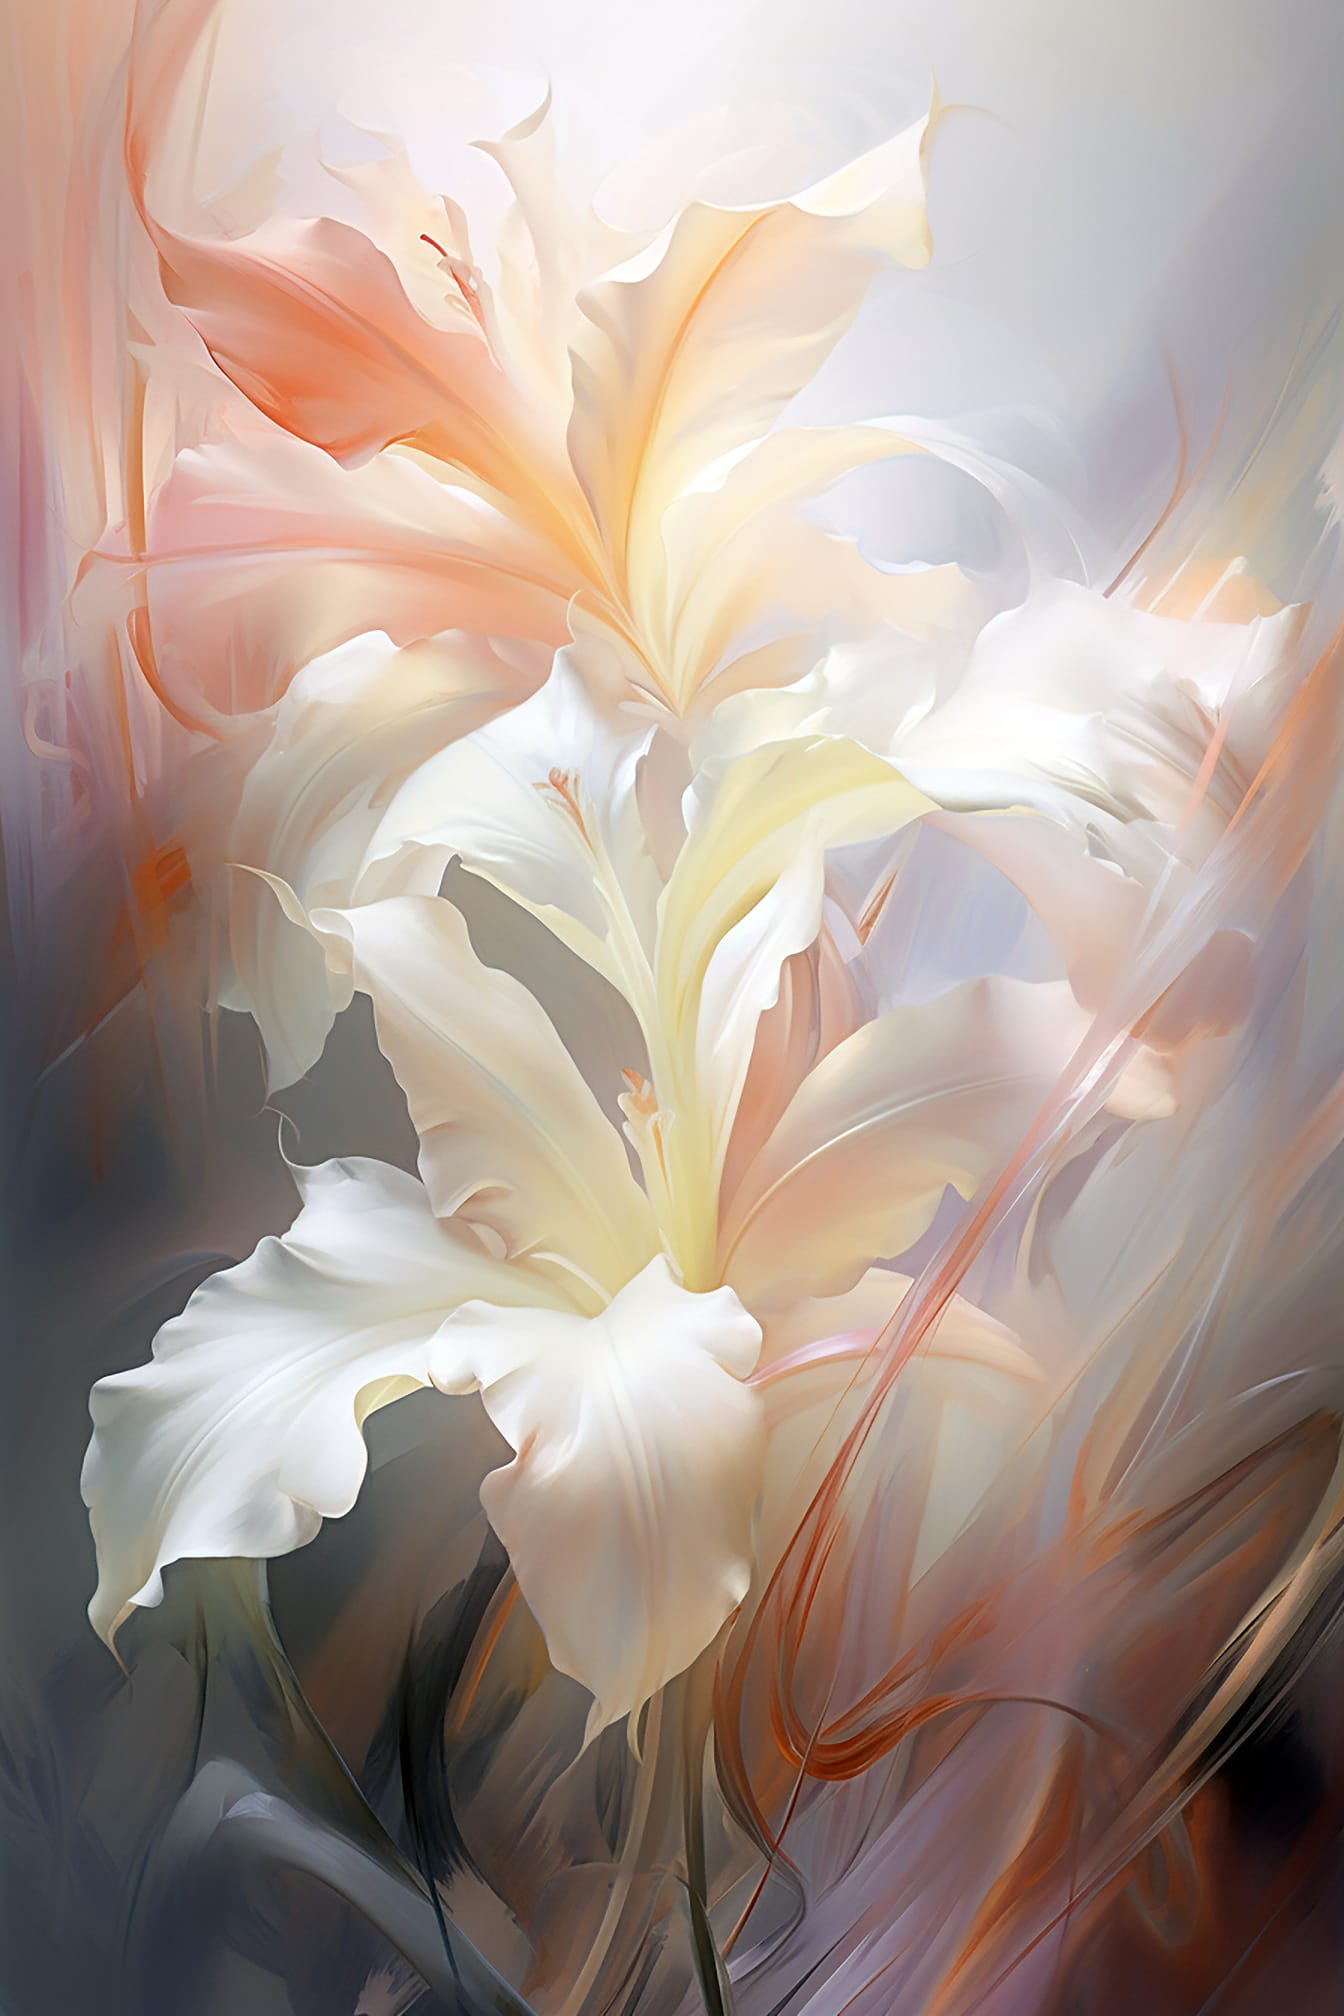 美术风格的白色花瓣的抽象艺术插图